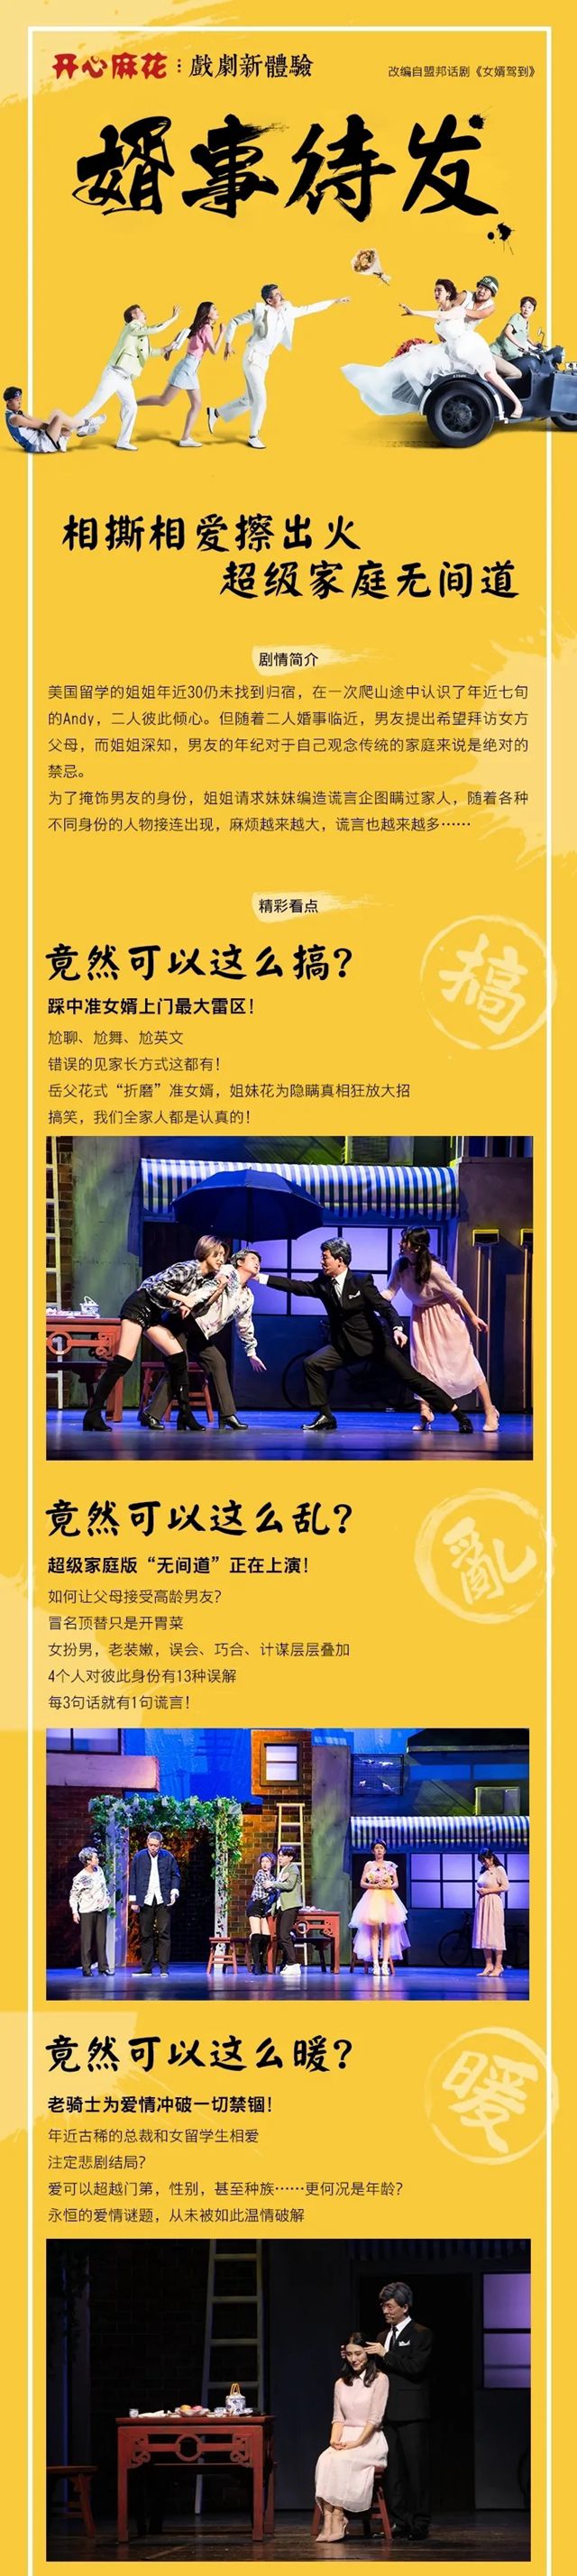 第一轮票已抢完~~~【免费抢票】龙华区公益惠民戏剧演出，请你看开心麻花舞台剧！